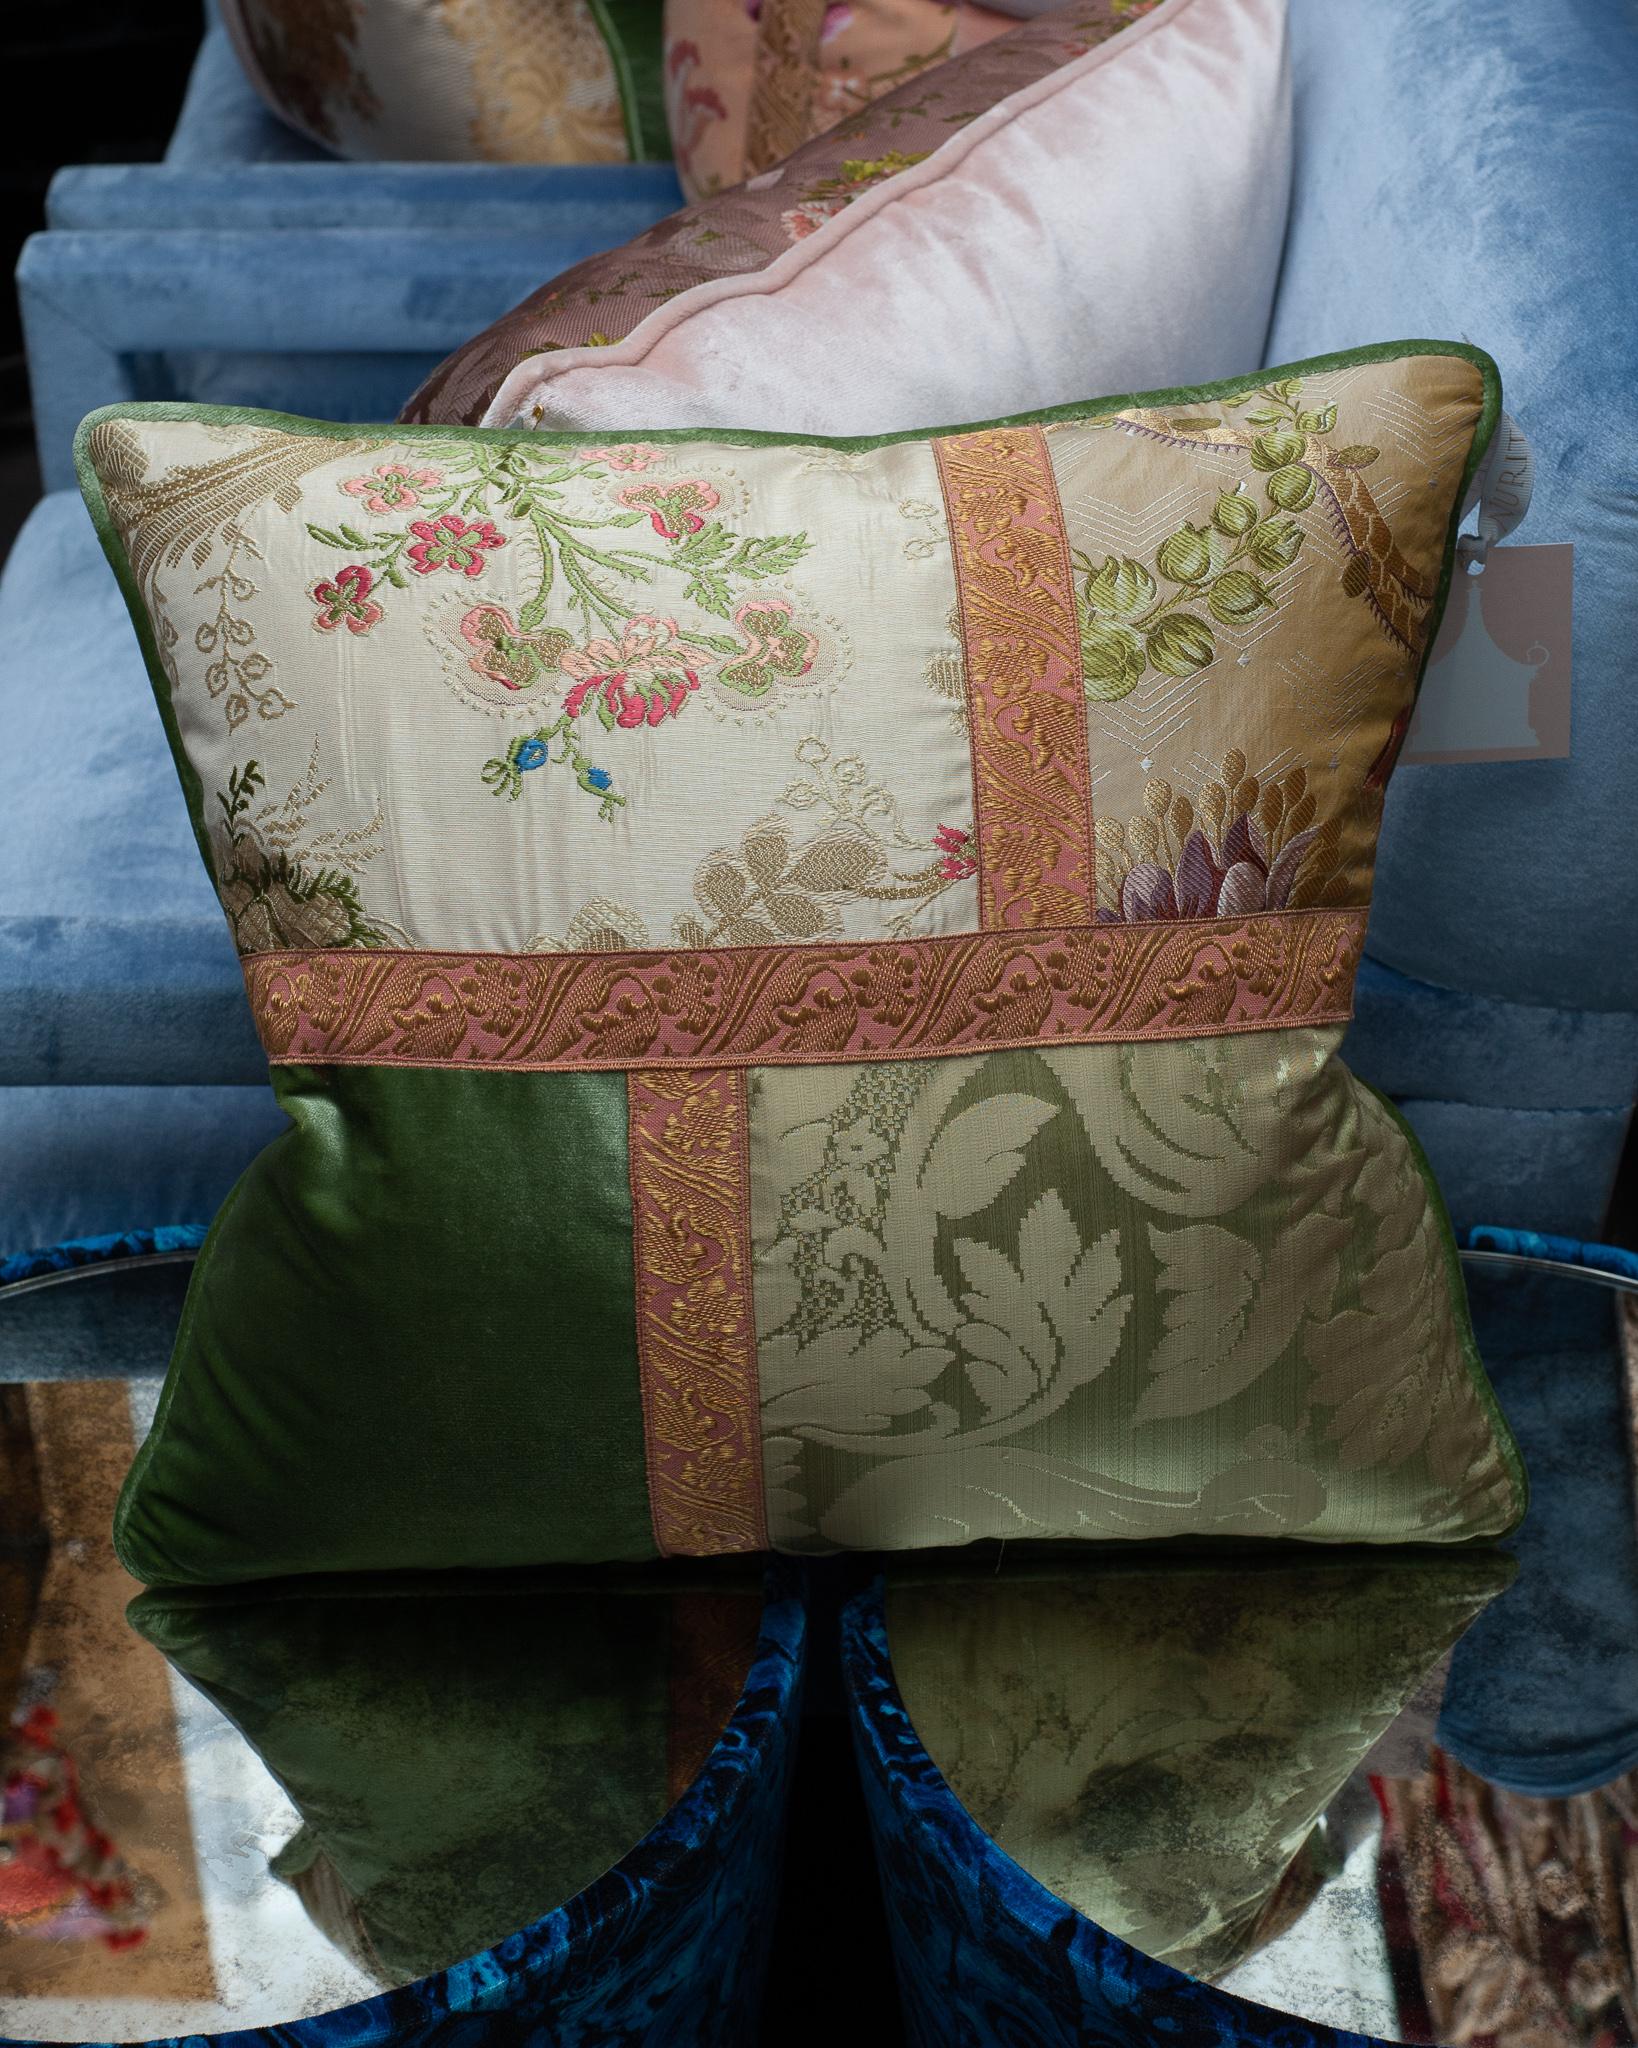 Ein handgefertigtes Patchwork-Kissen von Studio Maison Nurita aus verschiedenen grünen Seidensamten mit Schnittflor, floralen Dokumentendrucken und Vintage-Metallverzierungen. Gefüllt mit kanadischen Daunen und Federn.